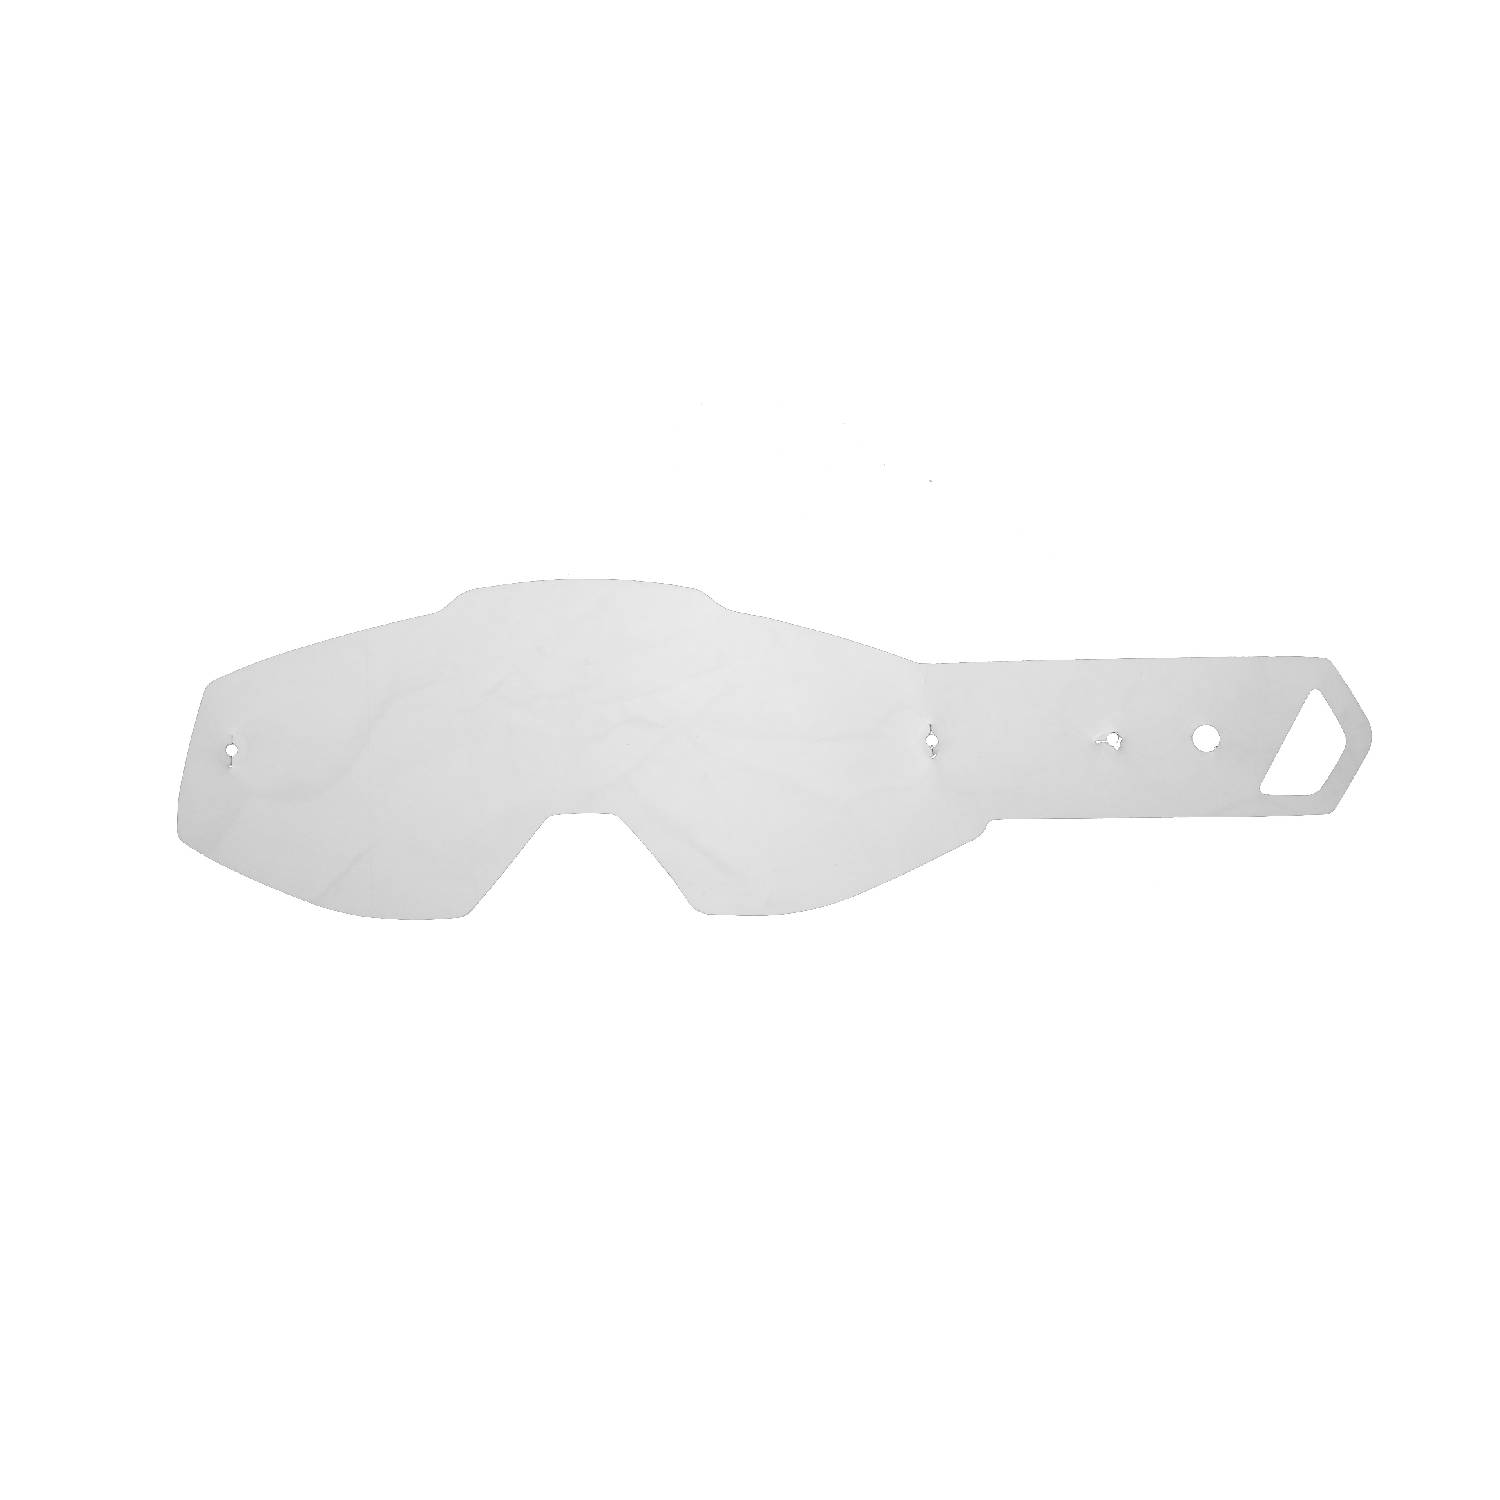 Lenti a strappo compatibili per occhiale/maschera POWERBOMB/POWERCORE YOUTH  kit 20 pz